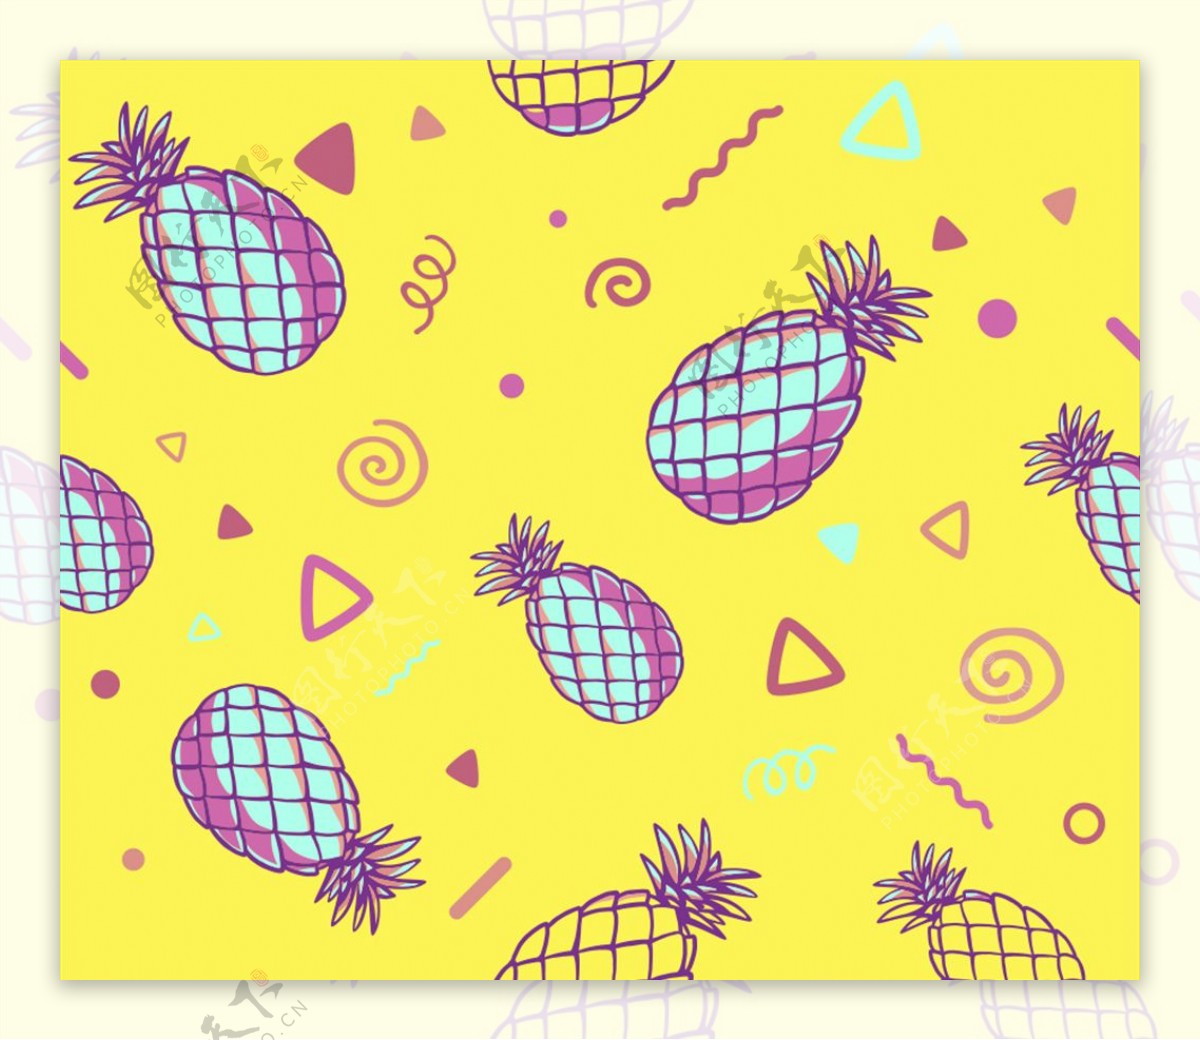 黄色背景上的菠萝花纹矢量素材